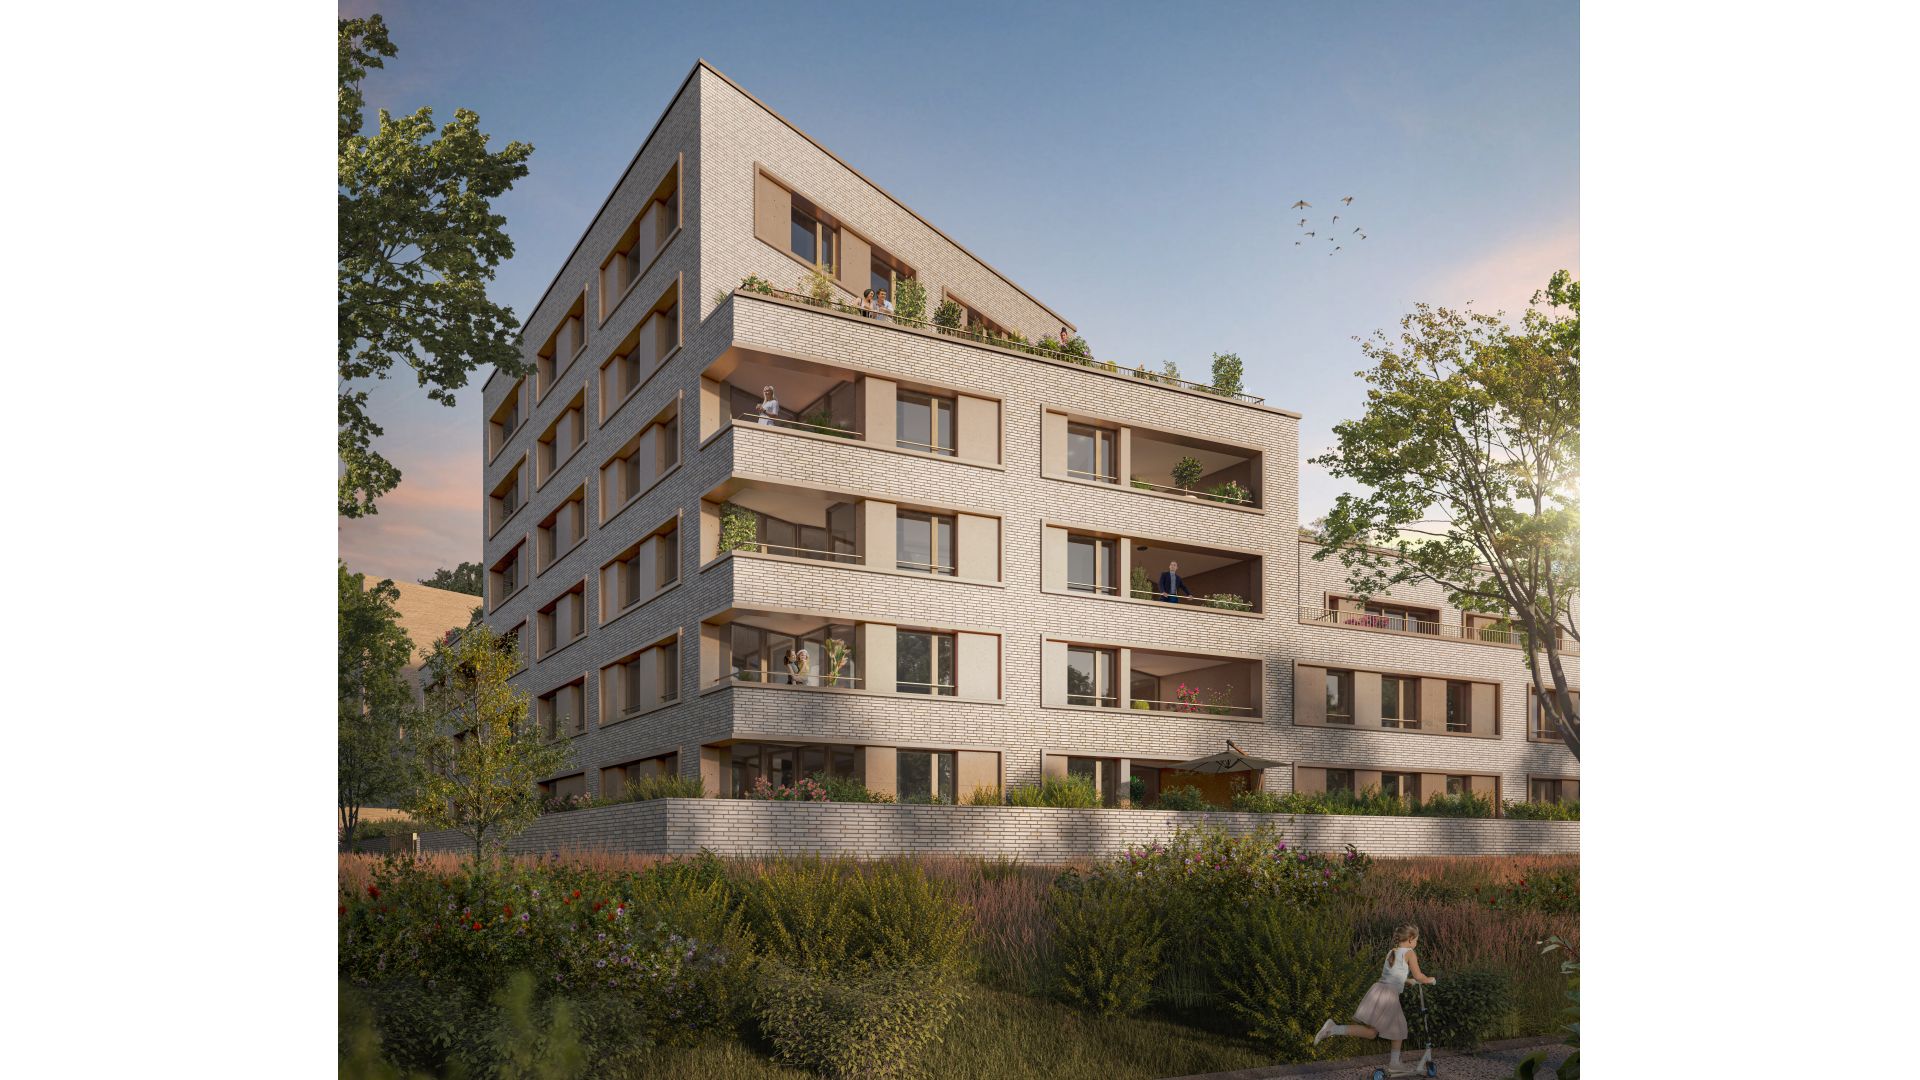 Greencity immobilier - achat appartements neufs du T1Bis au T4Duplex - Résidence Eurydice - Brétigny-sur-Orge 91220